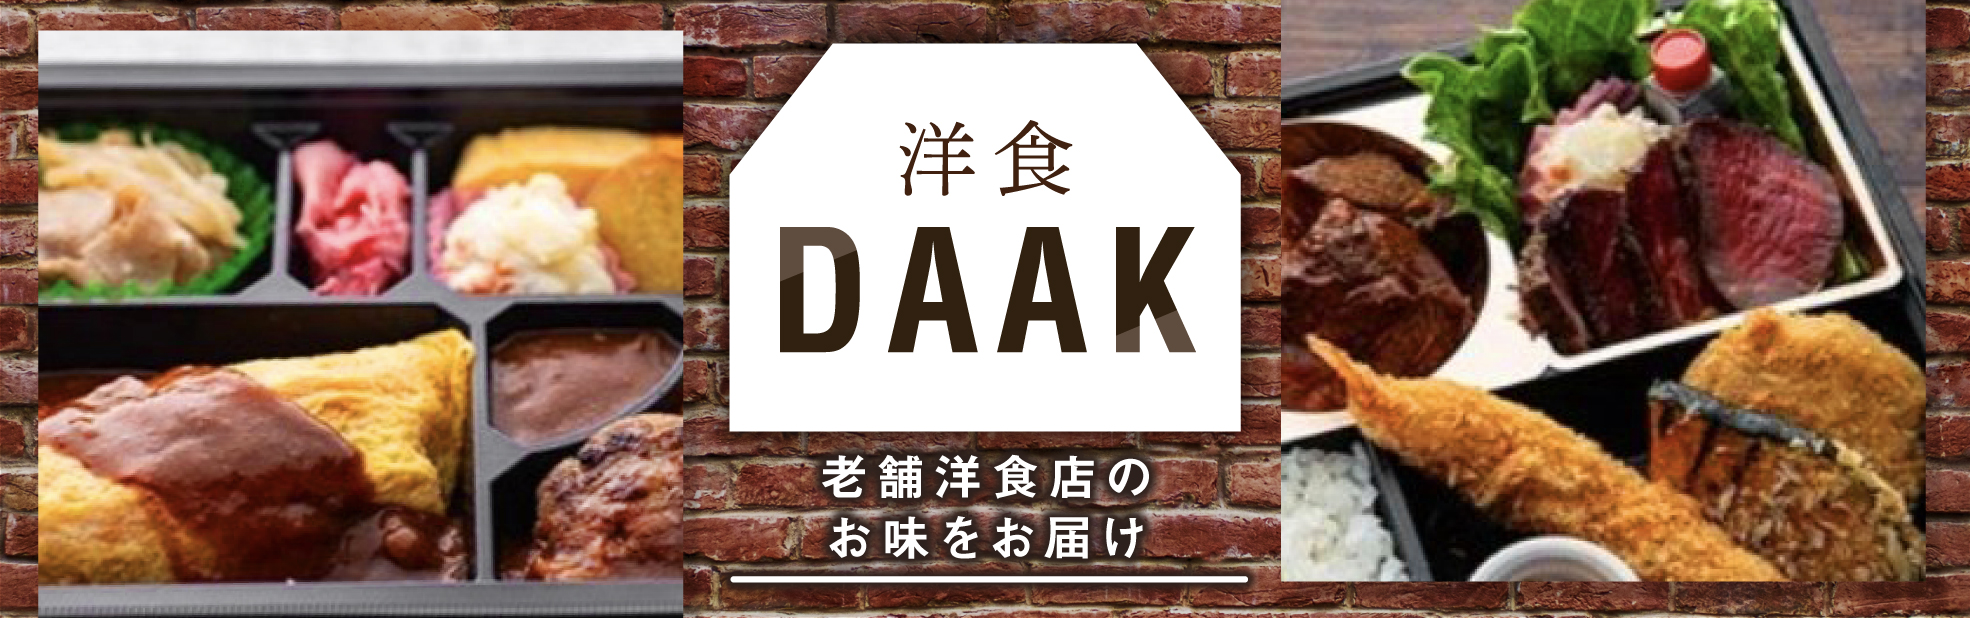 洋食DAAK(関西)